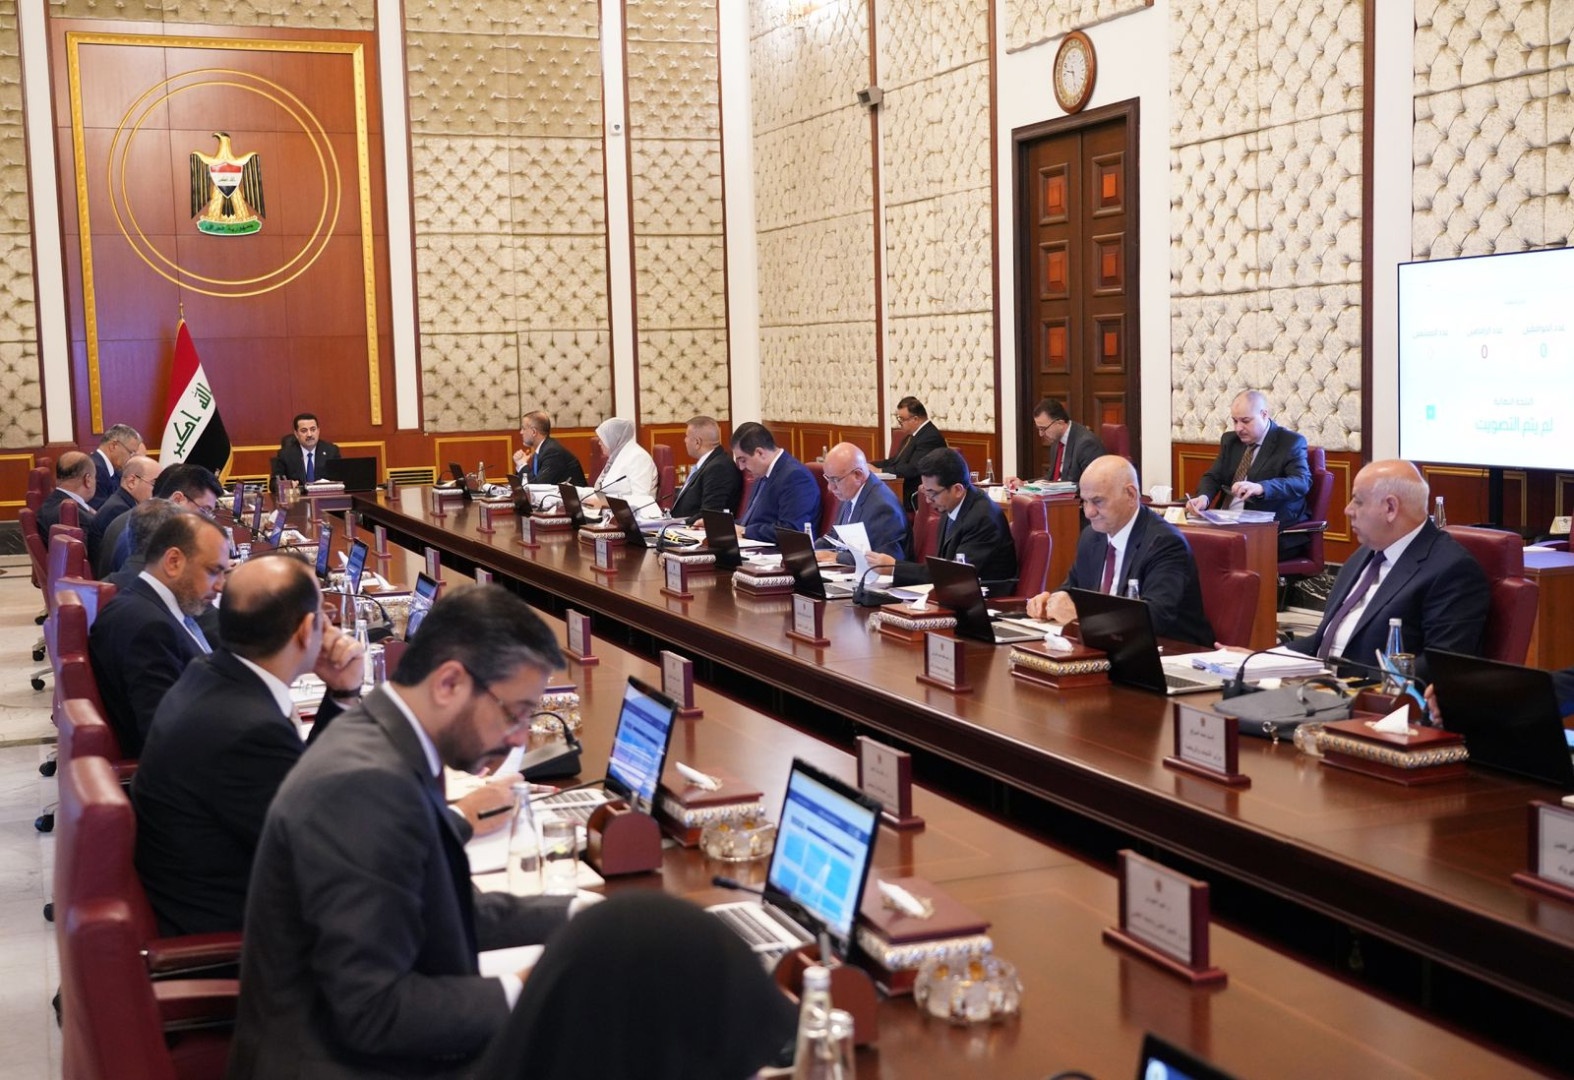 لایحه بودجه عمومی مصوب هیئت وزیران عراق،  بزرگترین لایحه در تاریخ این کشور است